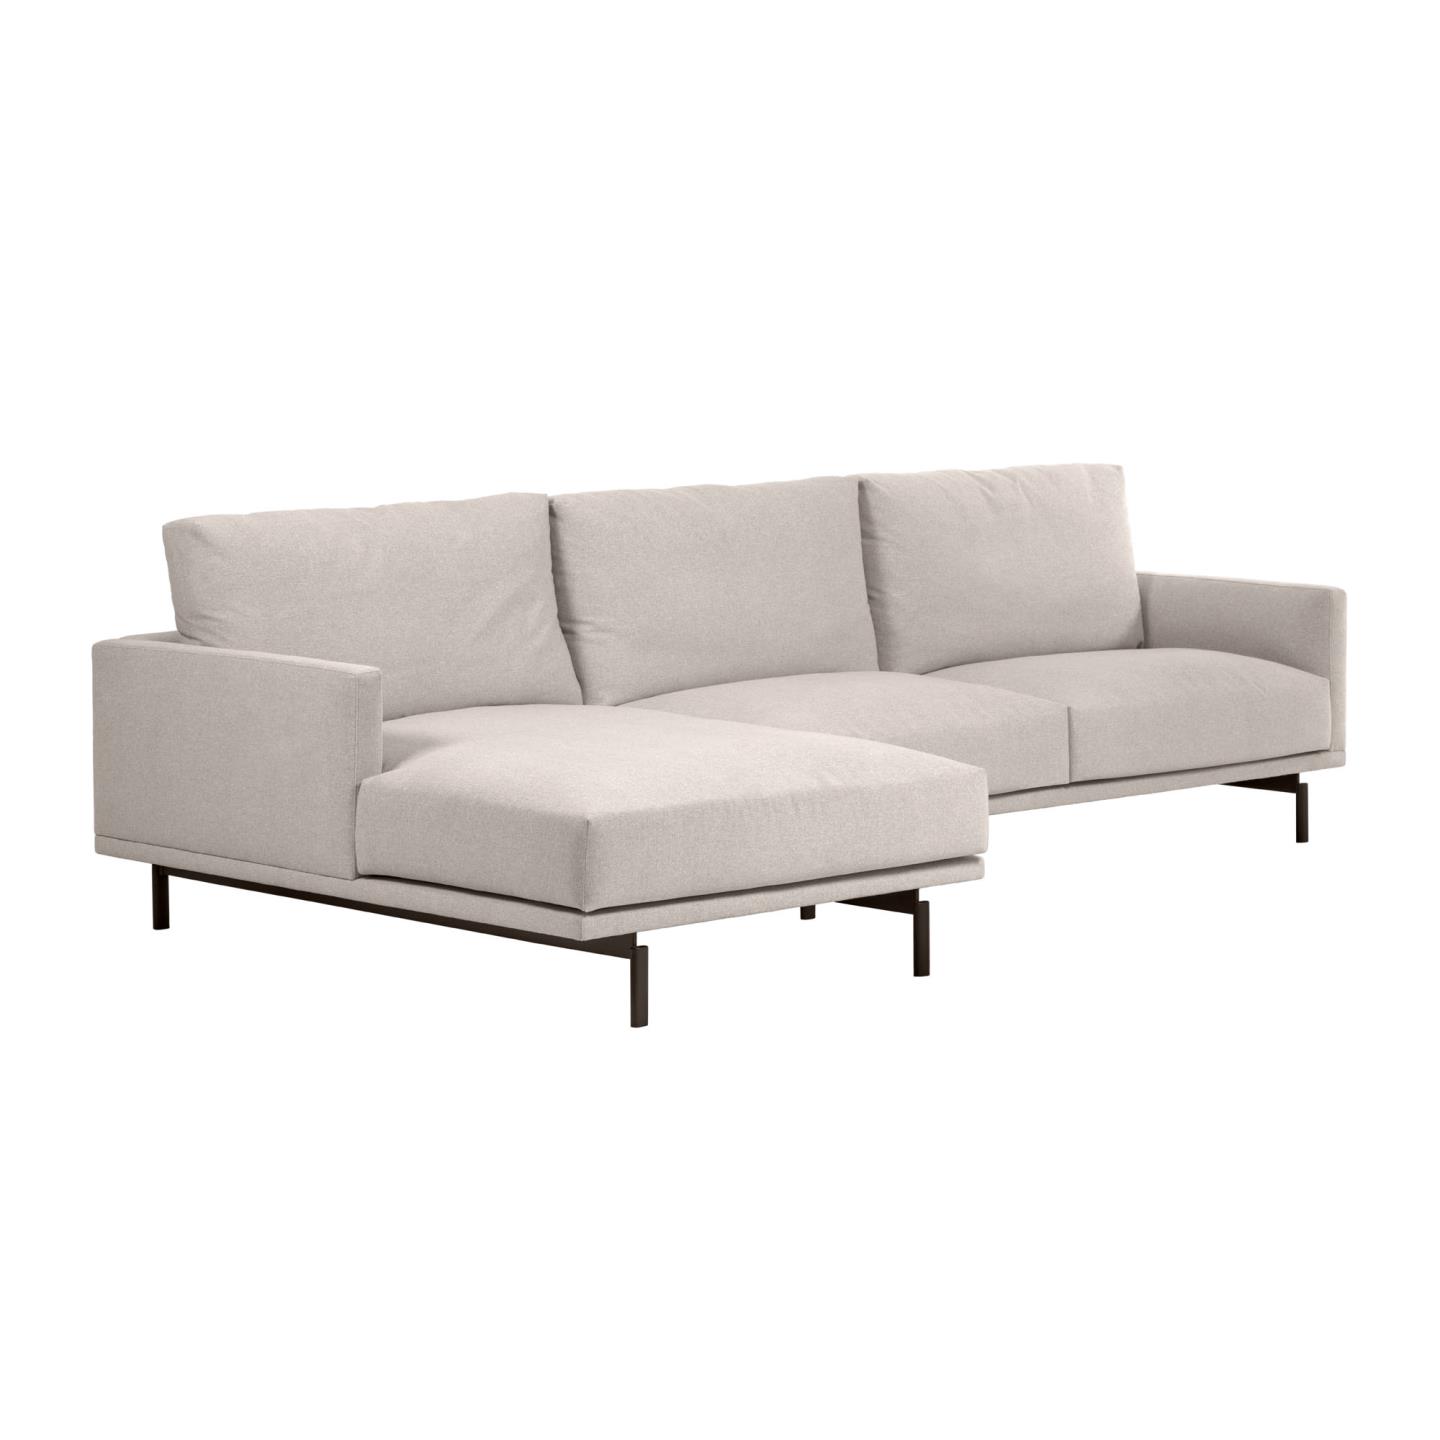 LAFORMA Galene 4 pers. sofa, m. venstre chaiselong - beige genbrugsfibre og jern